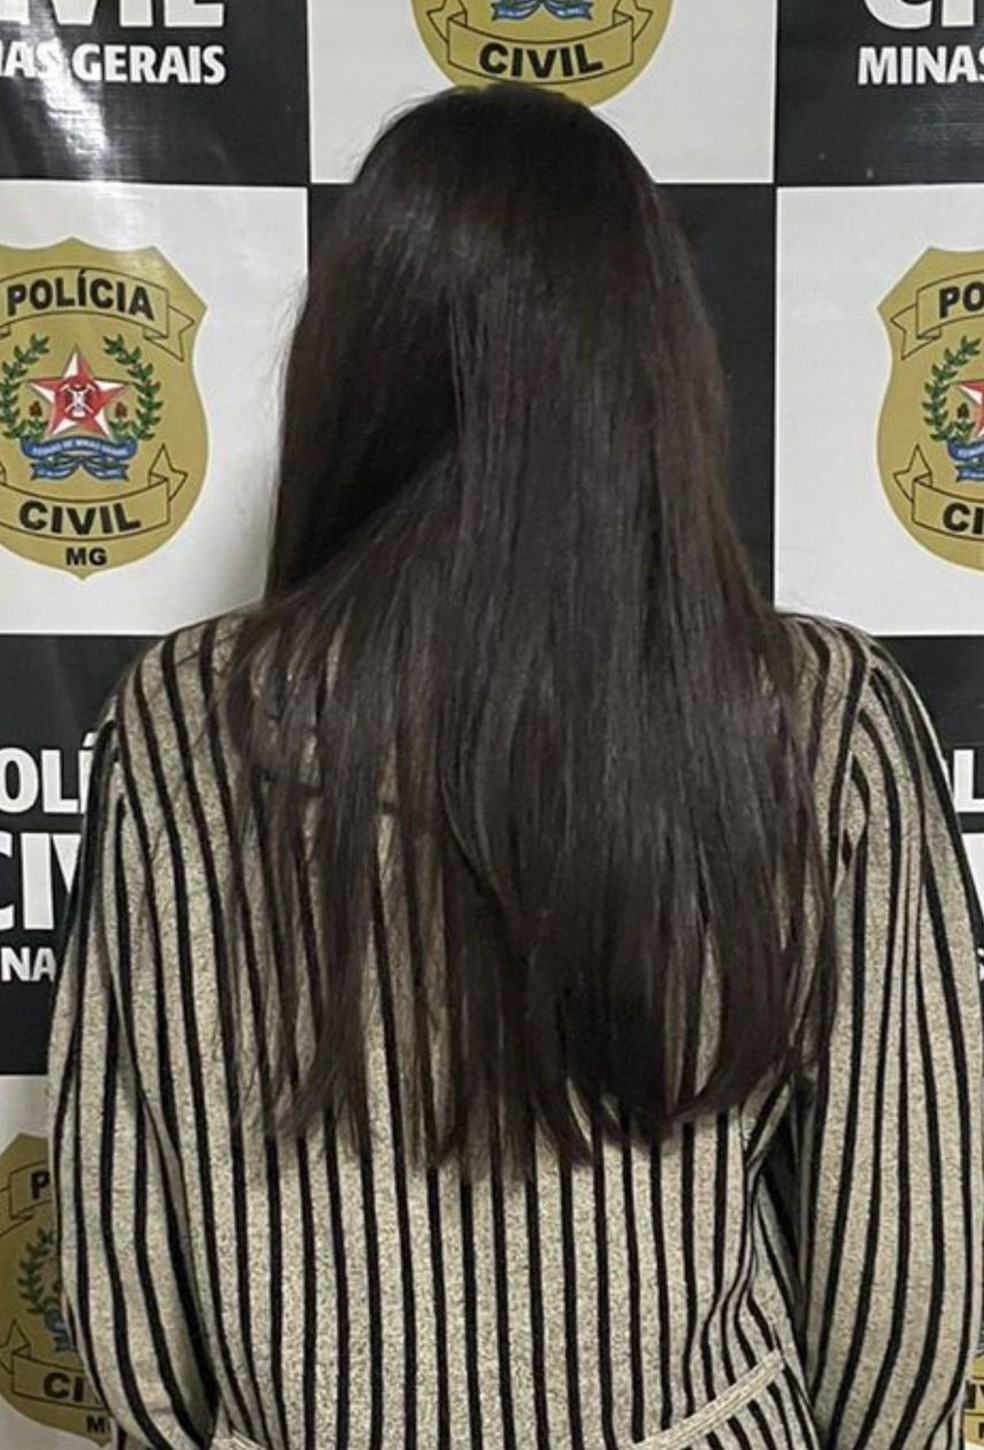 Mulher presa suspeita de stalkear médico — Foto: Polícia civil